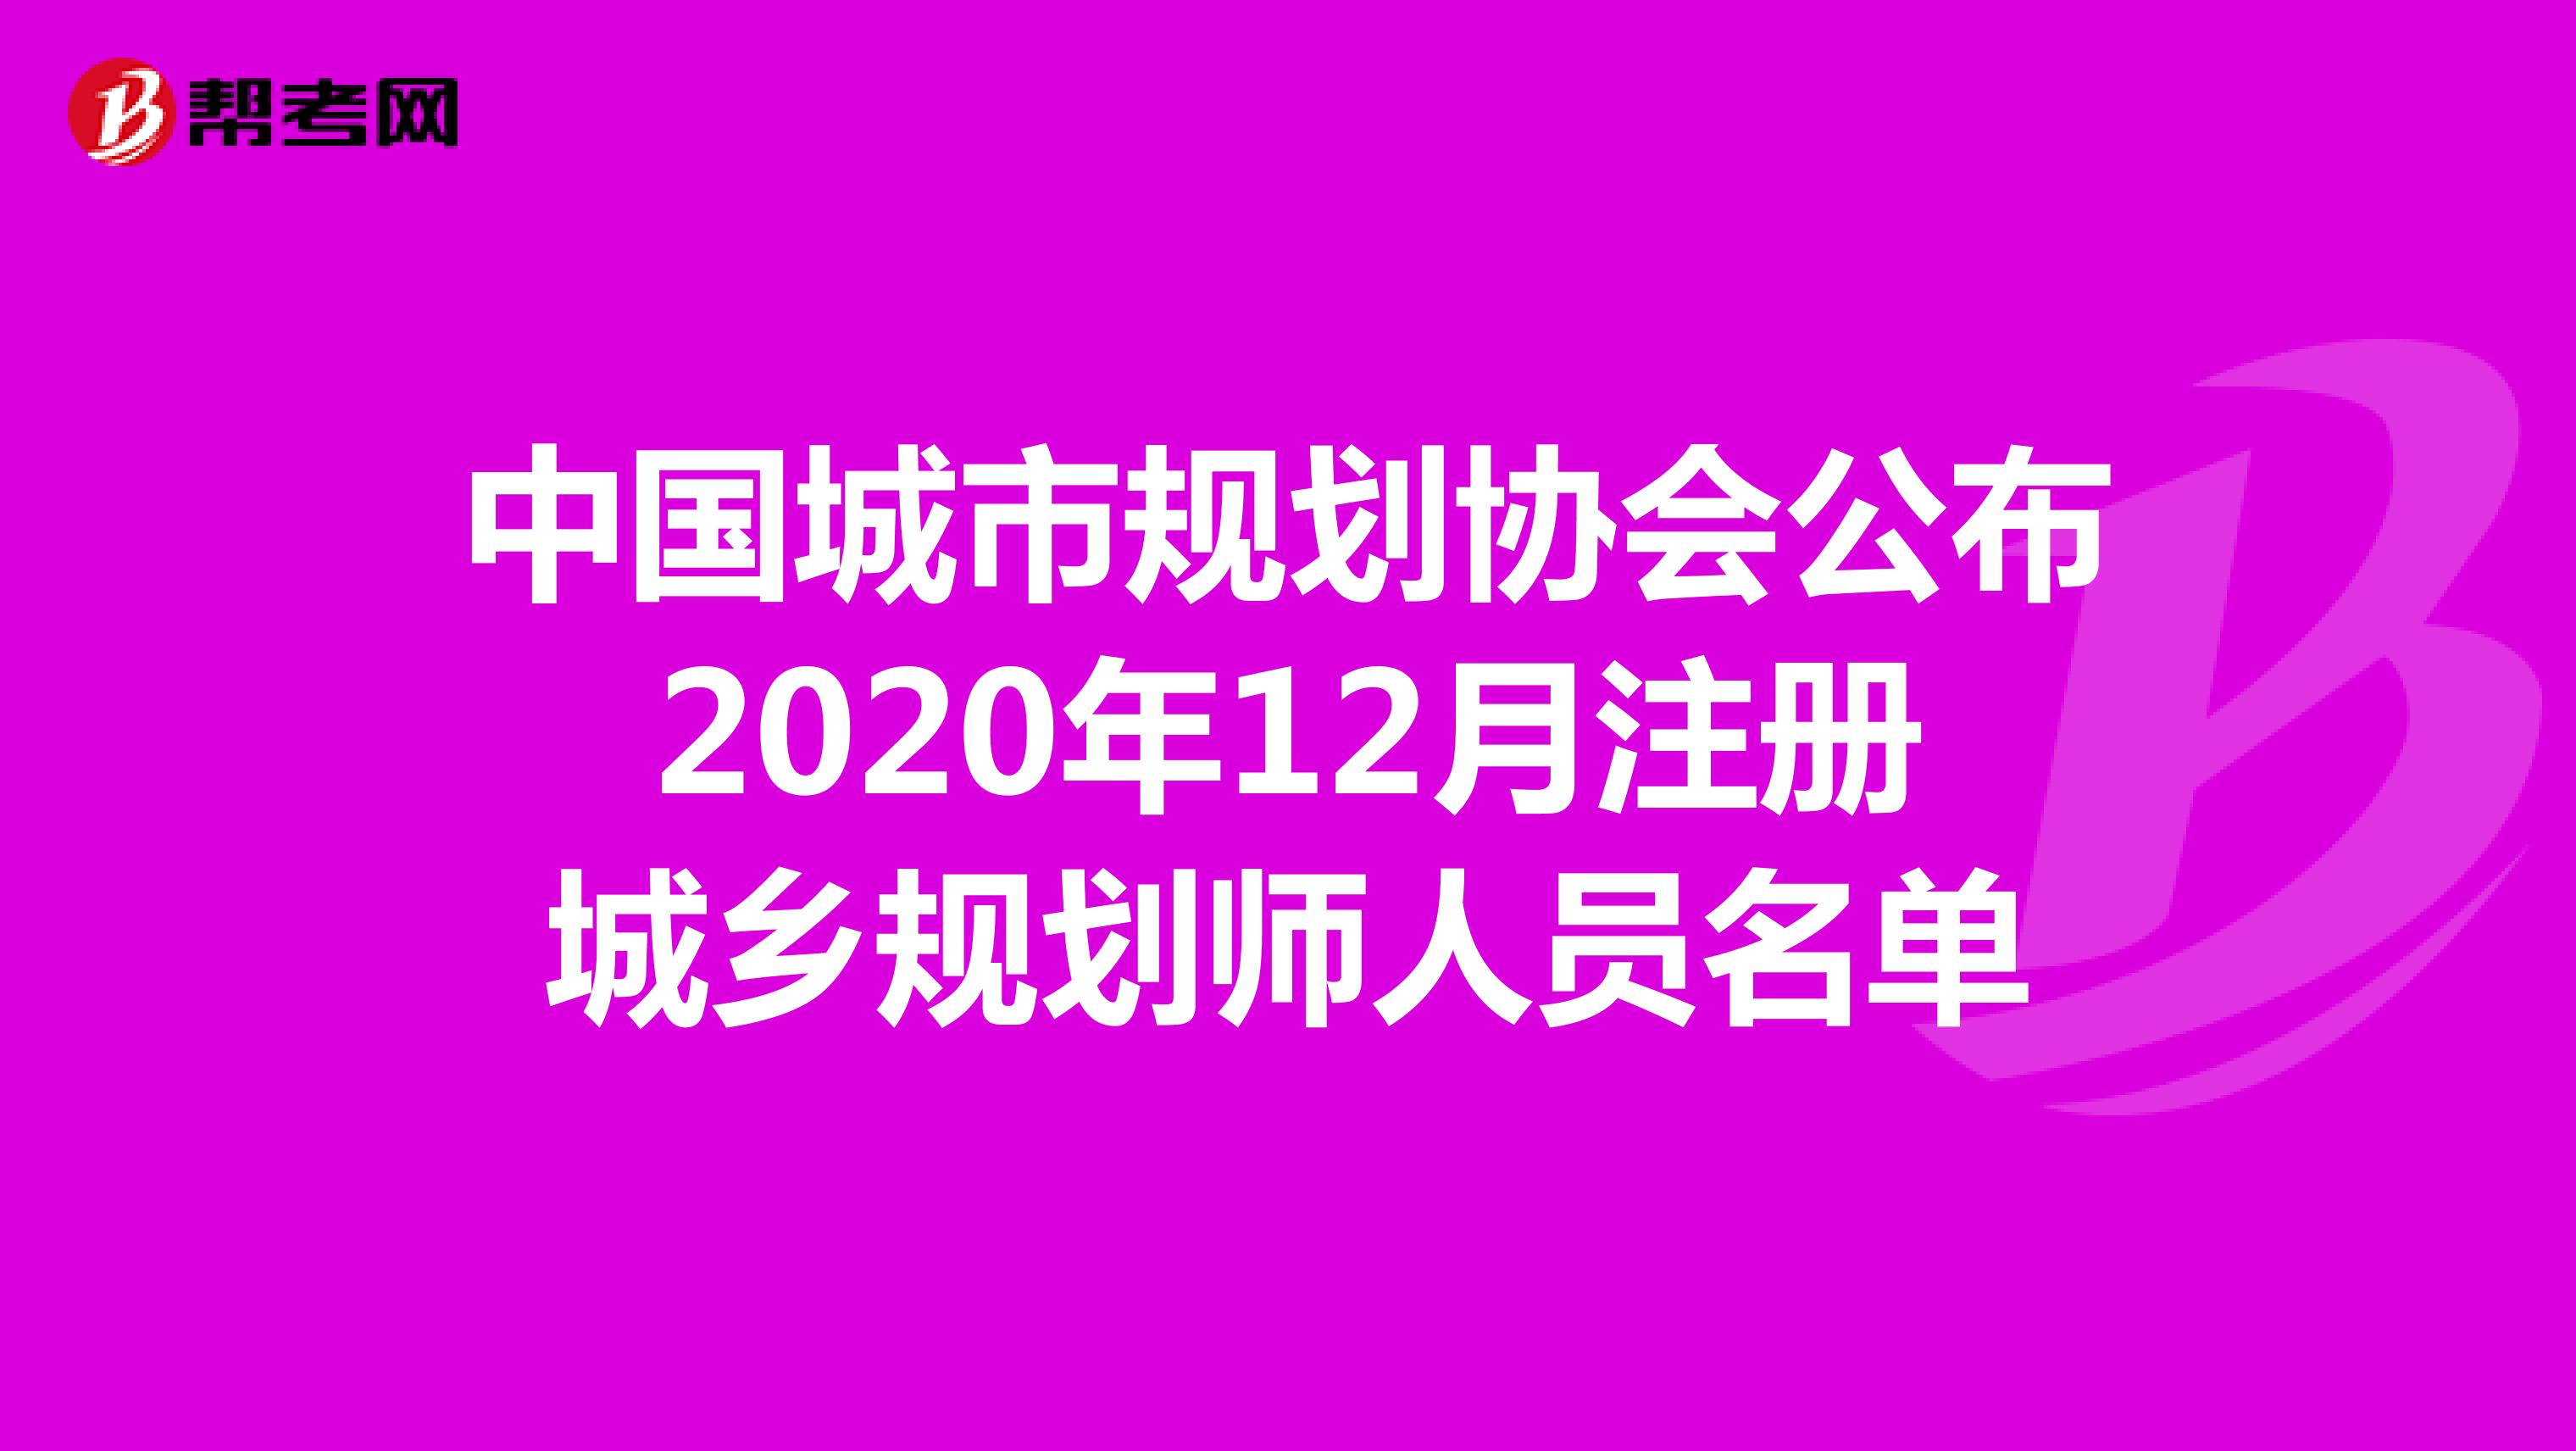 中国城市规划协会公布2020年12月注册城乡规划师人员名单